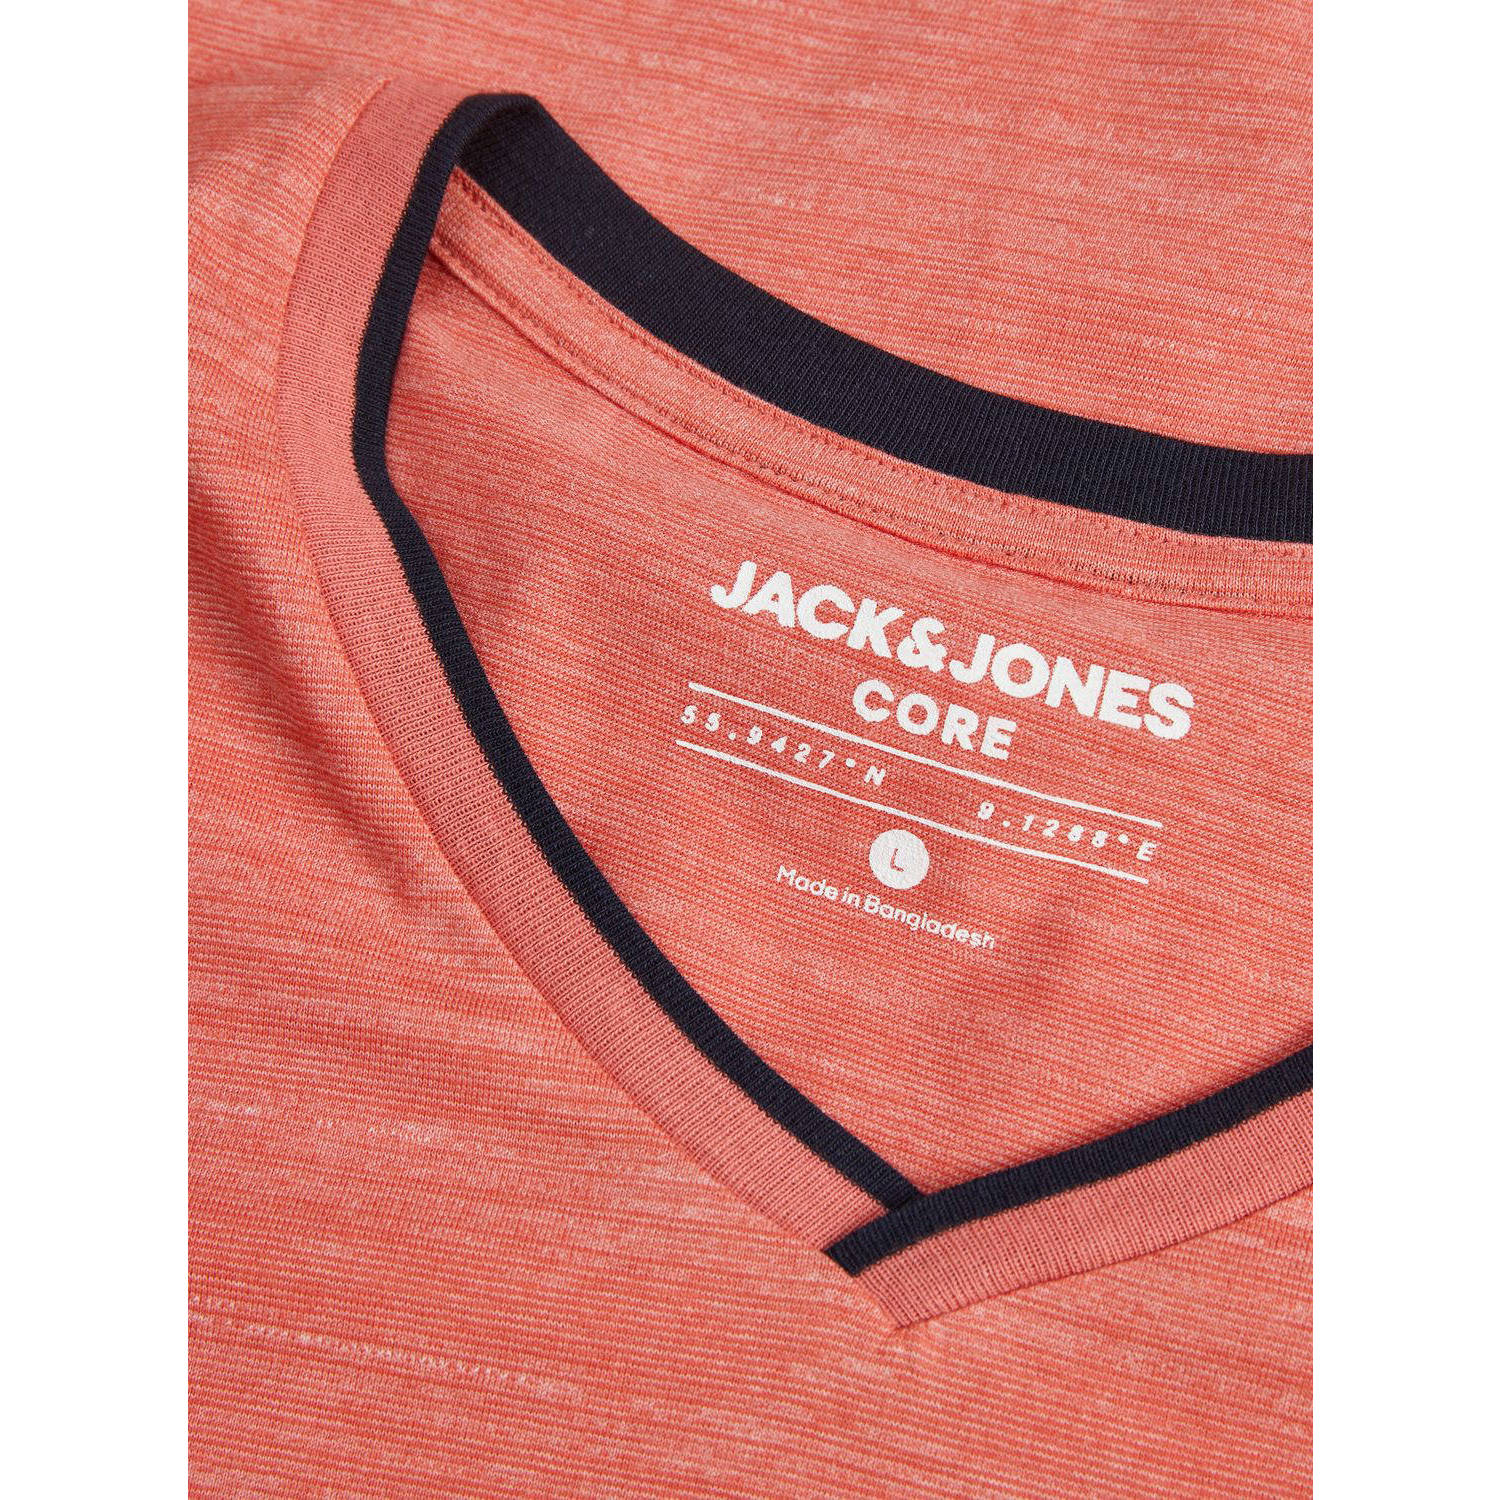 JACK & JONES CORE regular fit T-shirt JCOCONTRAST met logo koraalrood